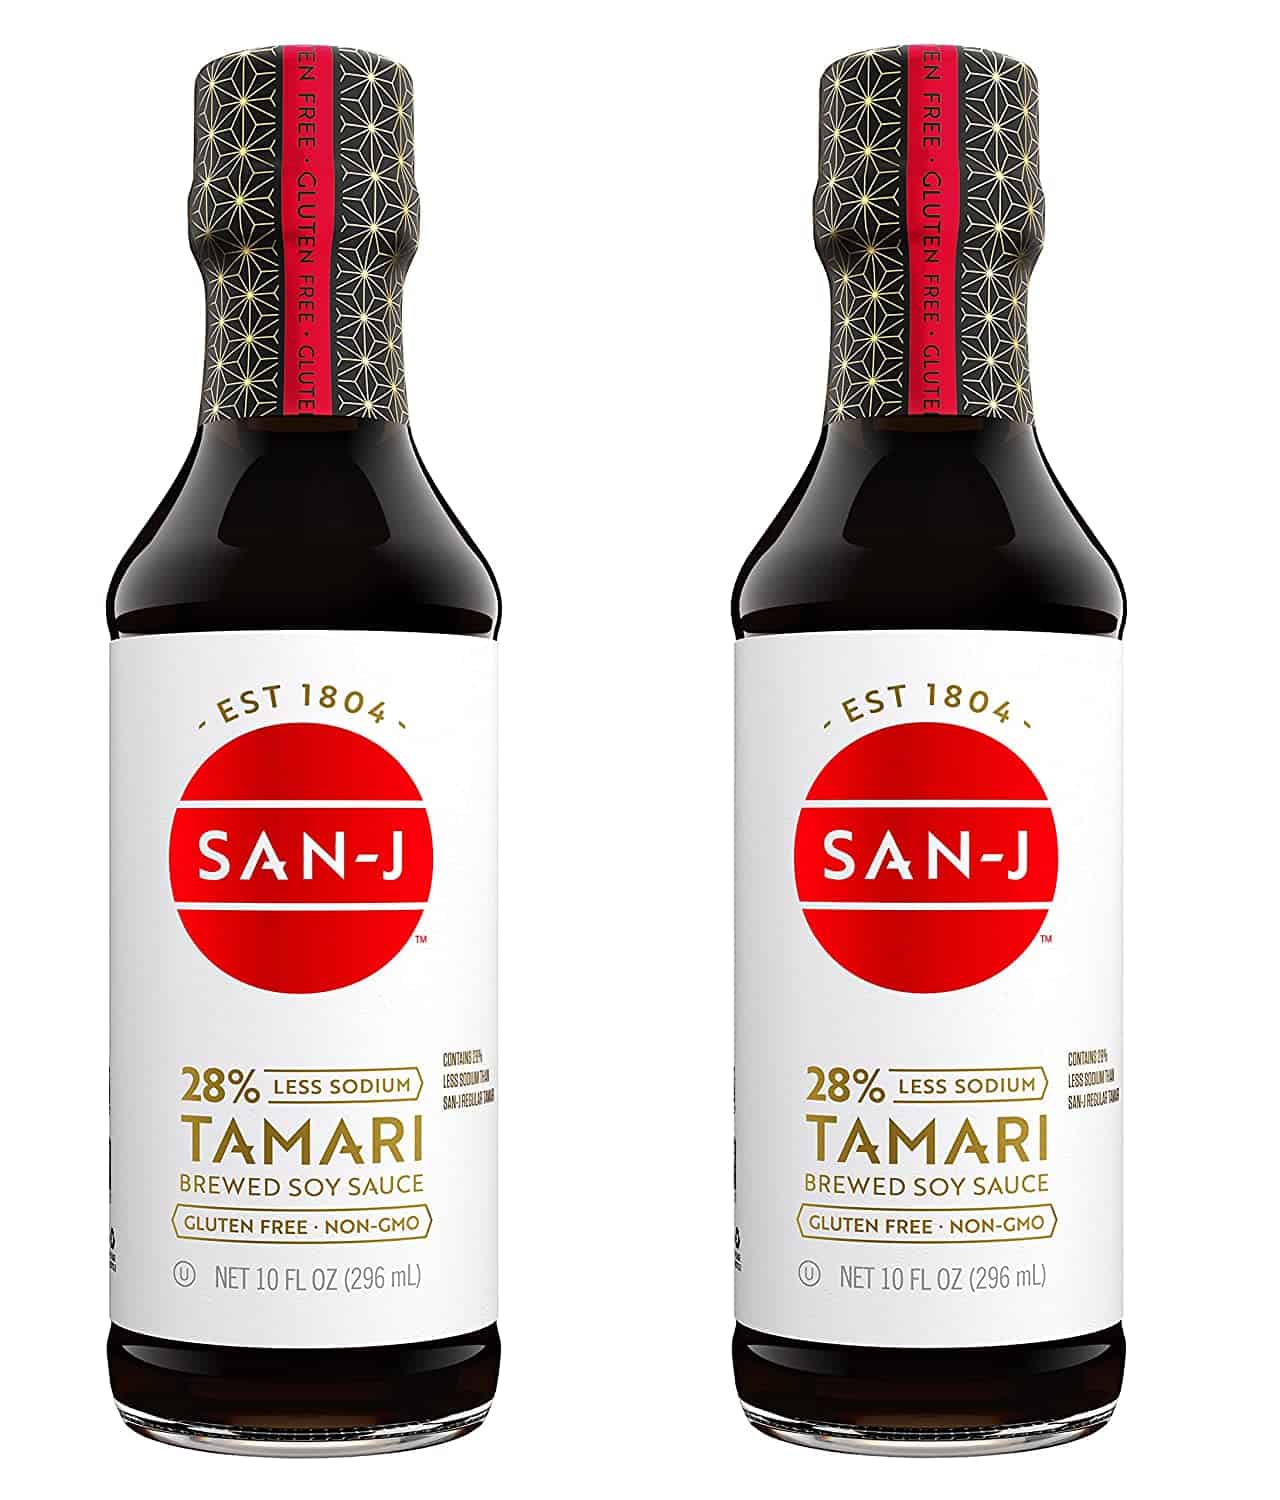 Meilleure sauce soja tamari : San-J Gluten Free Tamari